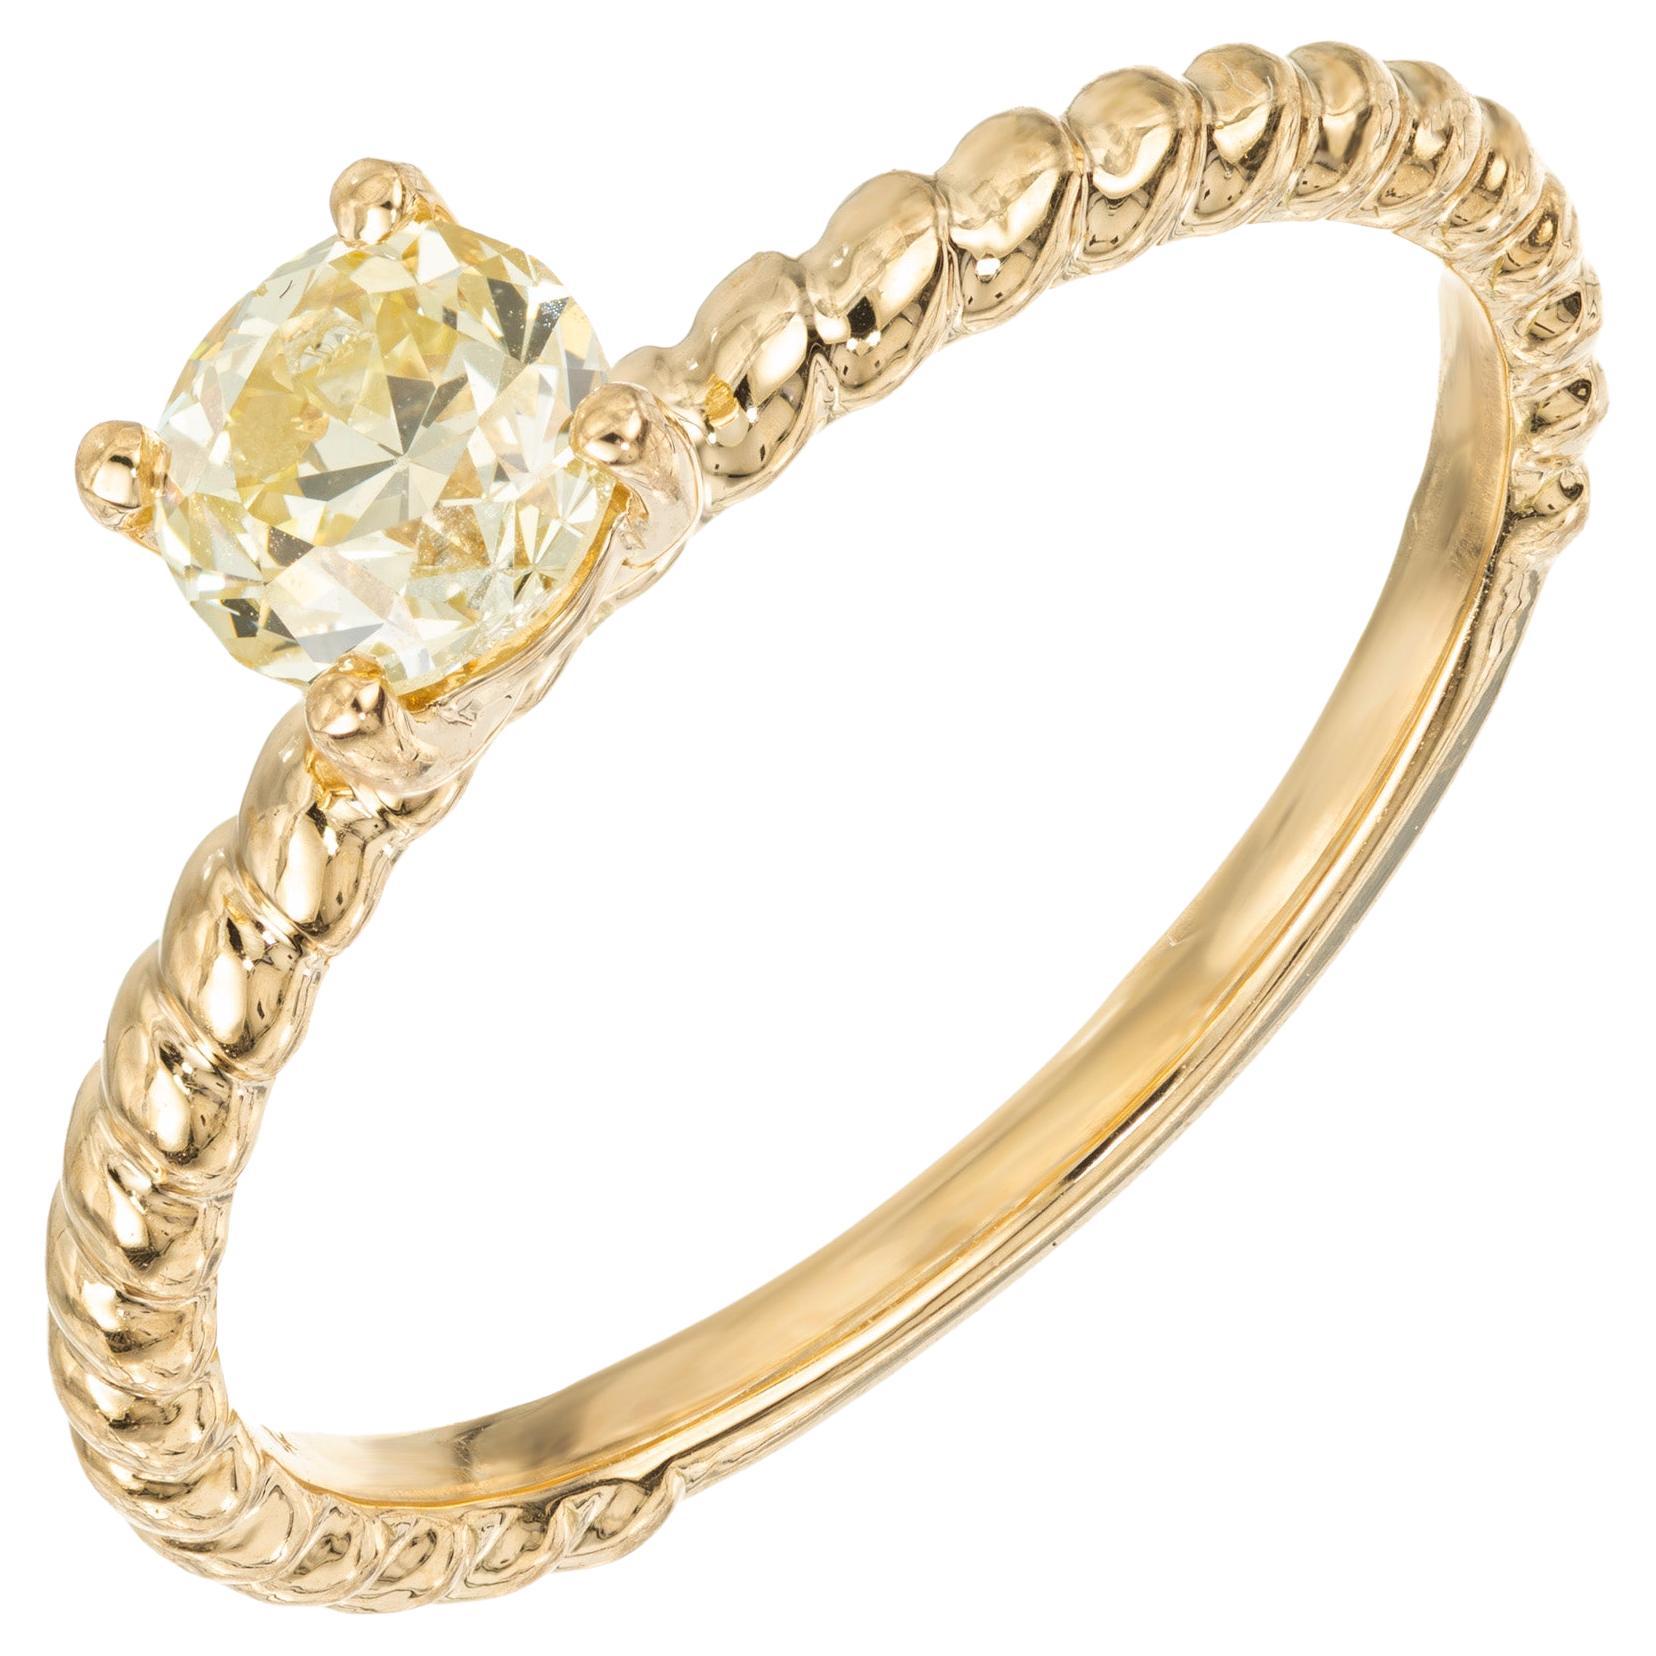 Peter Suchy Bague de fiançailles en or jaune certifiée GIA et ornée d'un diamant rond de 0,56 carat